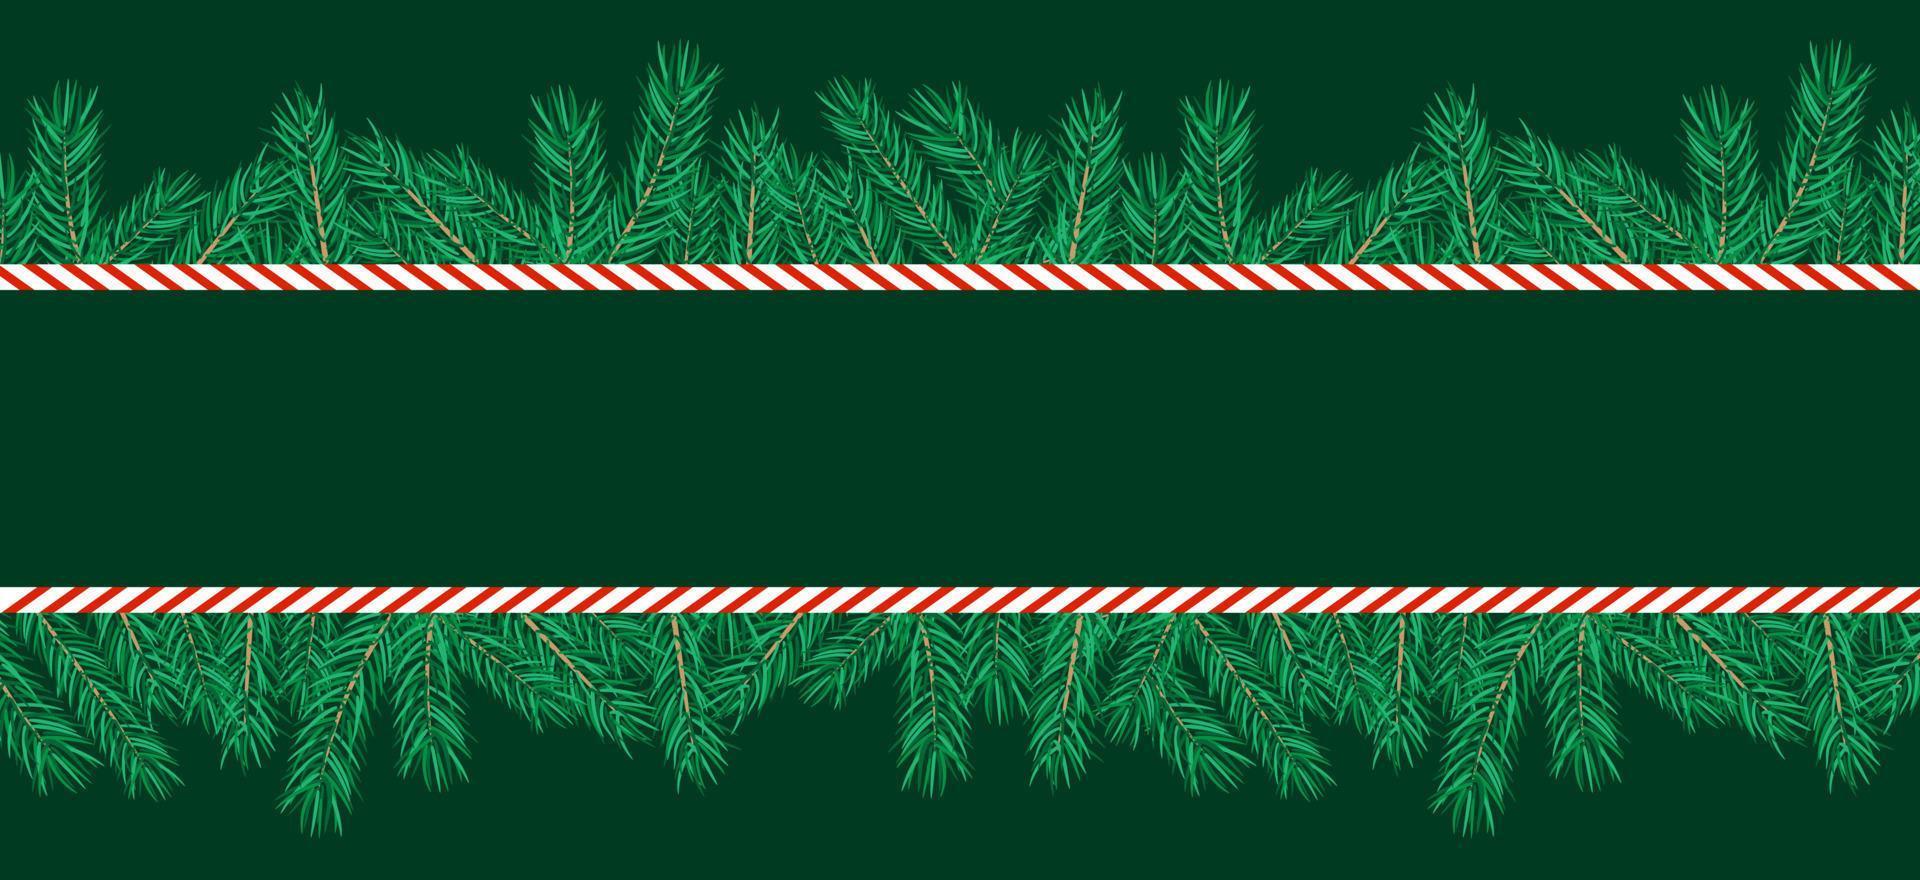 grenze aus weihnachtsbaumzweigen und zuckerstange. horizontales, leeres Banner. Vektor-Illustration. vektor